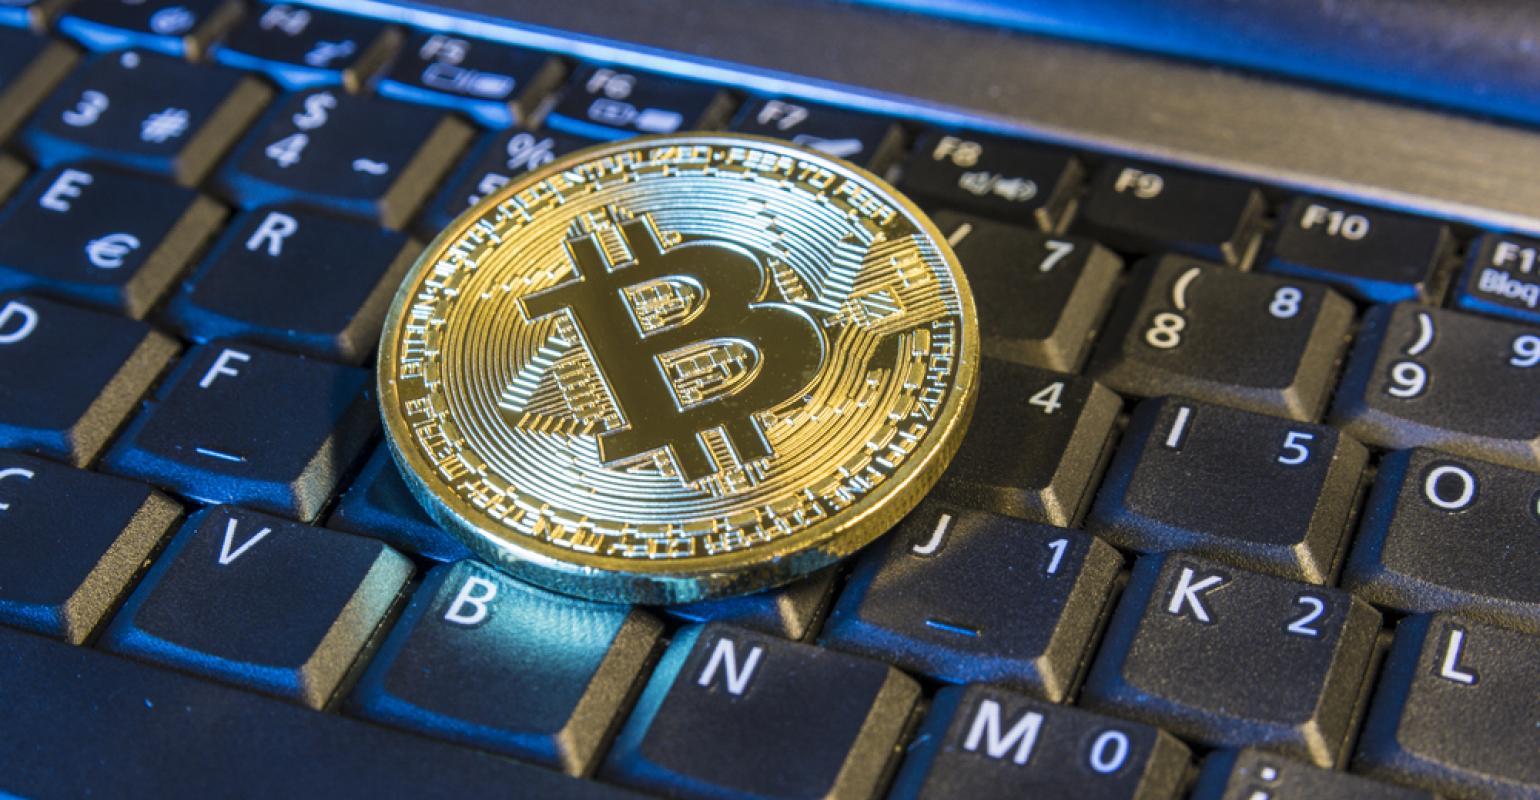 O preço atual de um Bitcoin é de US$ 25.980 com um volume de negociação de US$ 11.9 Bilhões nas últimas 24 horas